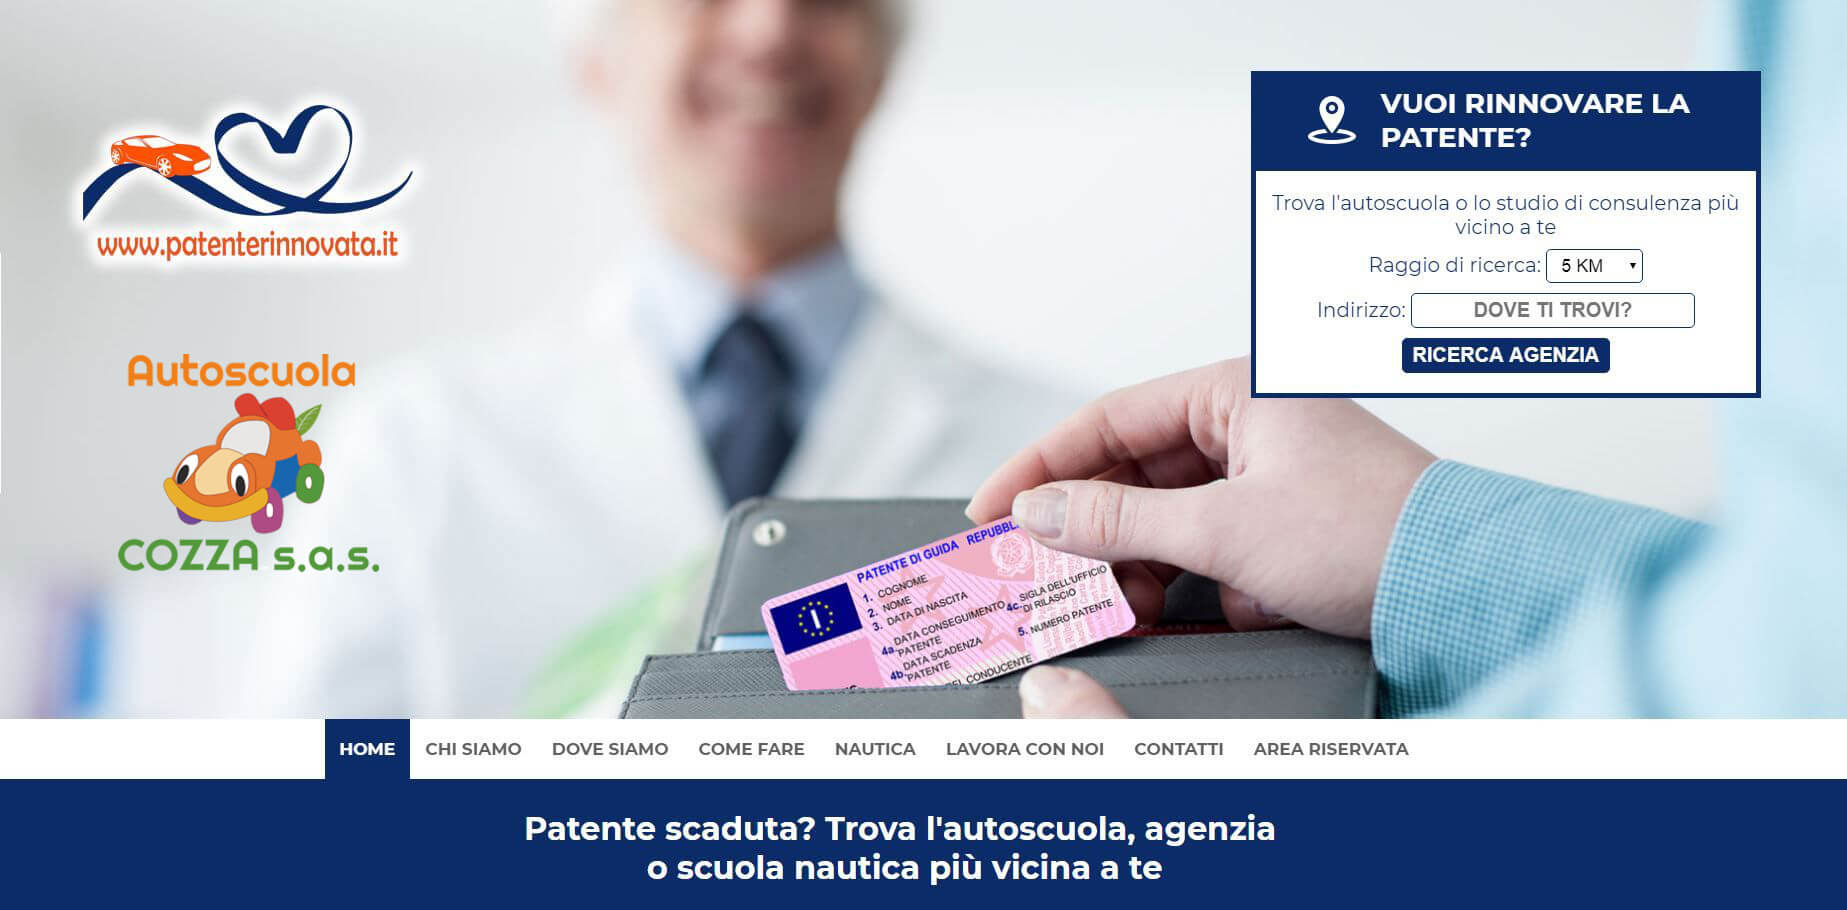 Patenterinnovata il nuovo sito per il rinnovo della patente